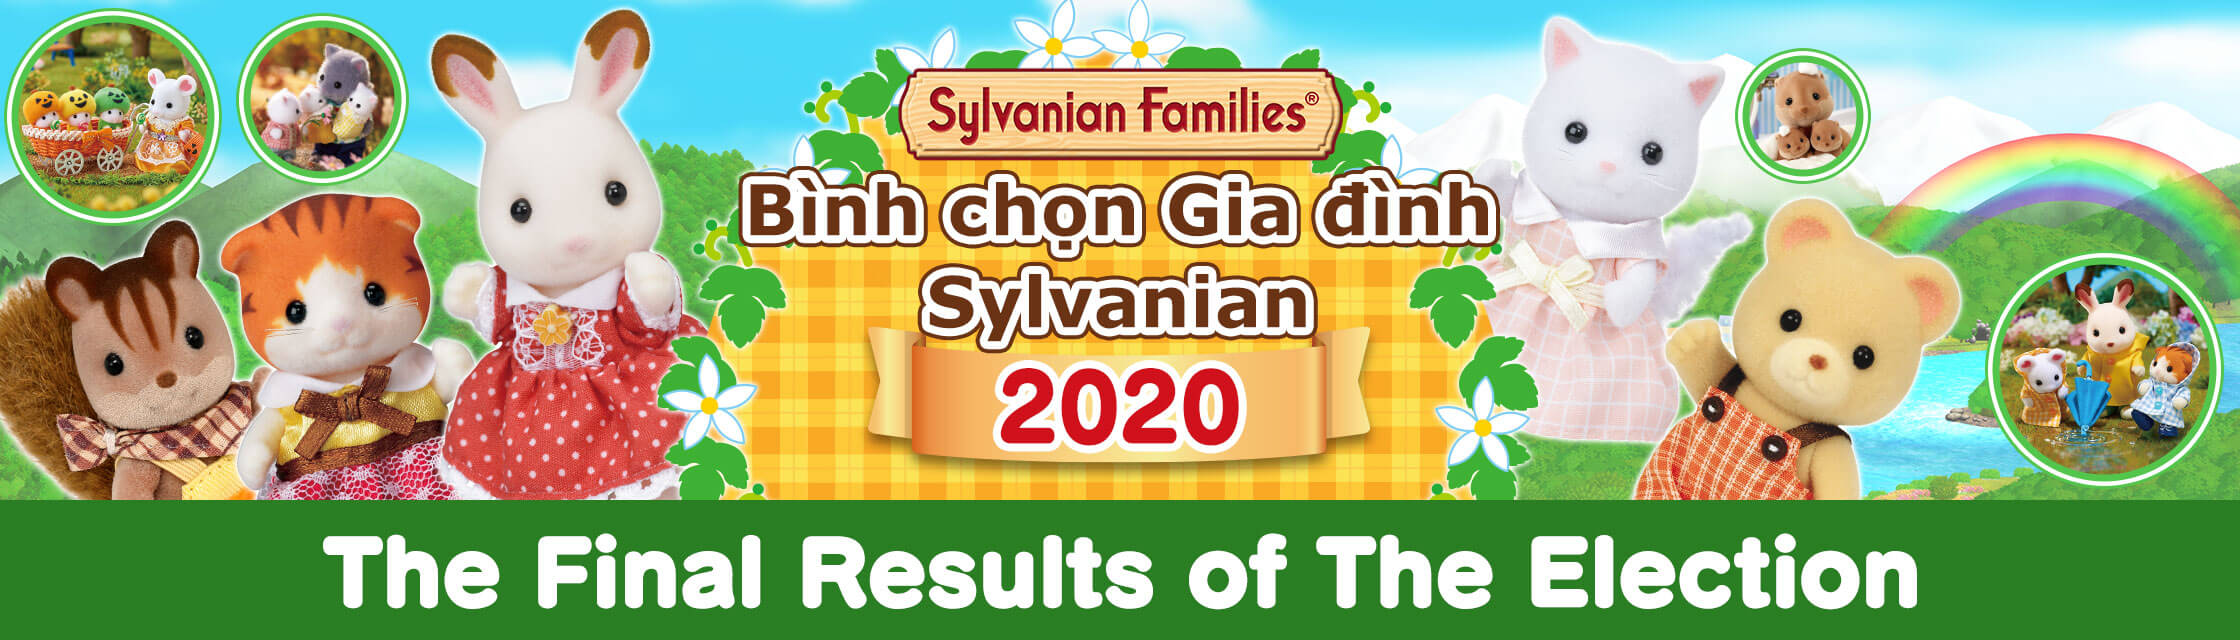 Bình chọn Gia đình Sylvanian